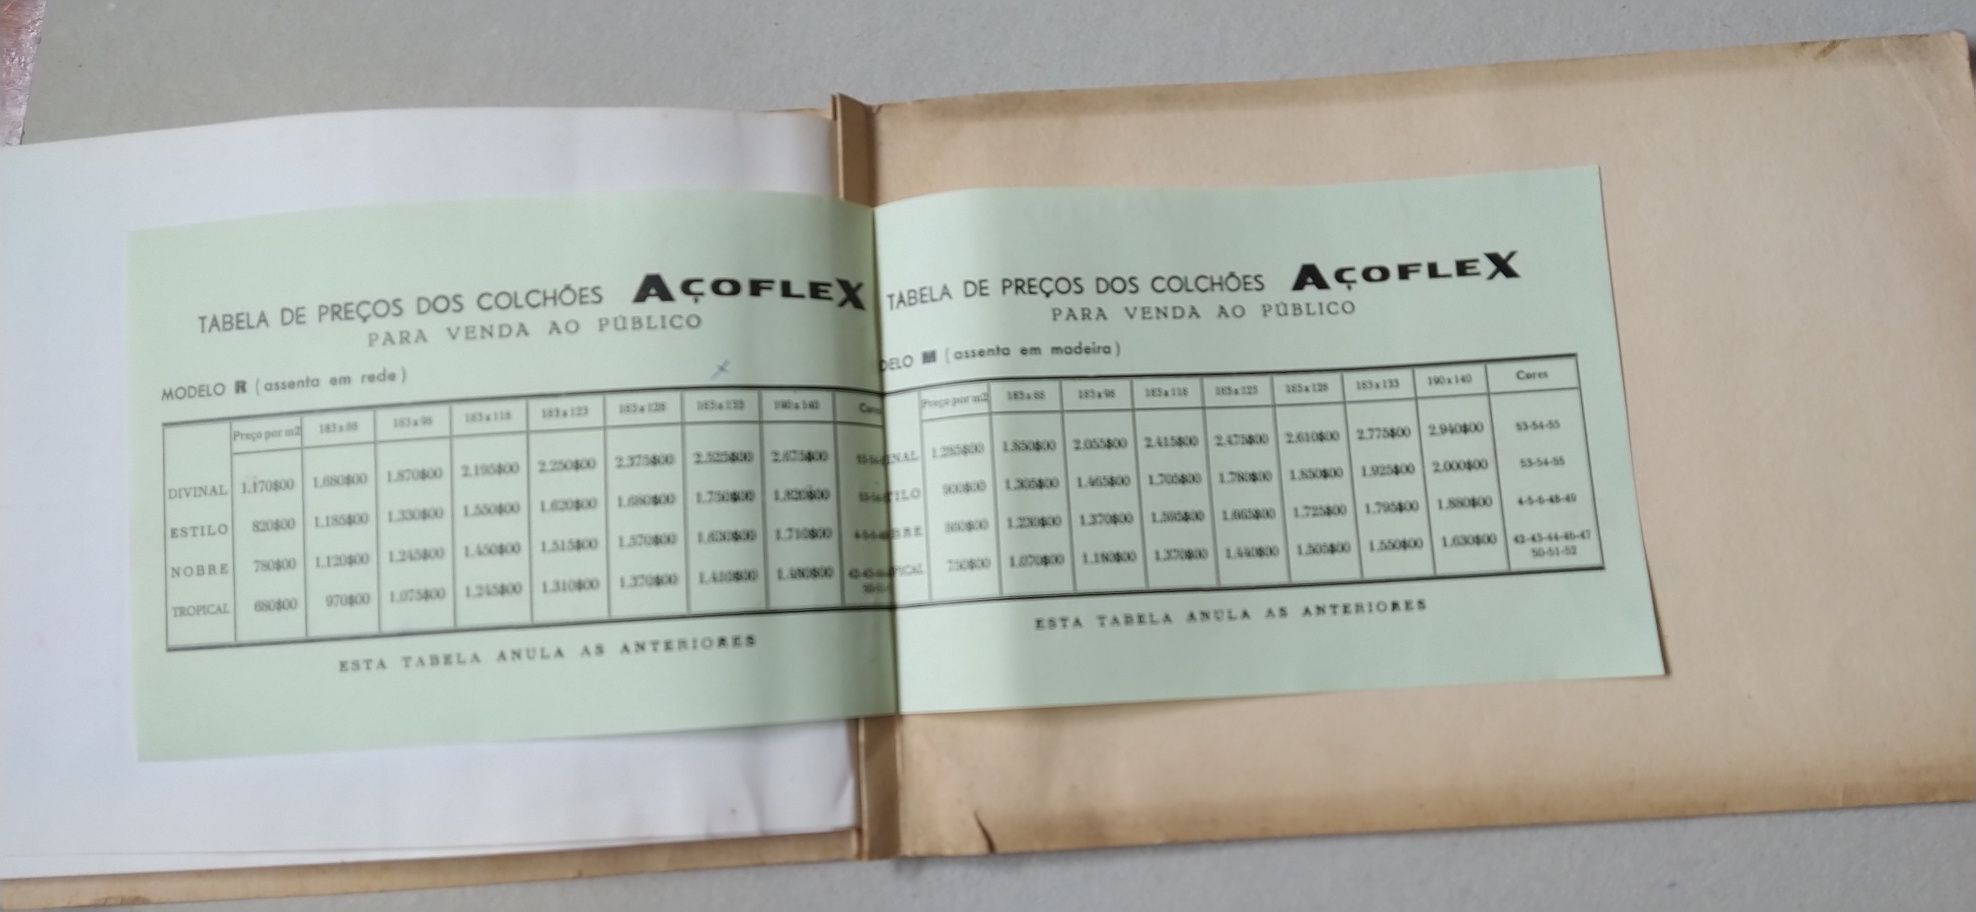 Catálogo de tecidos para colchões AçoFlex